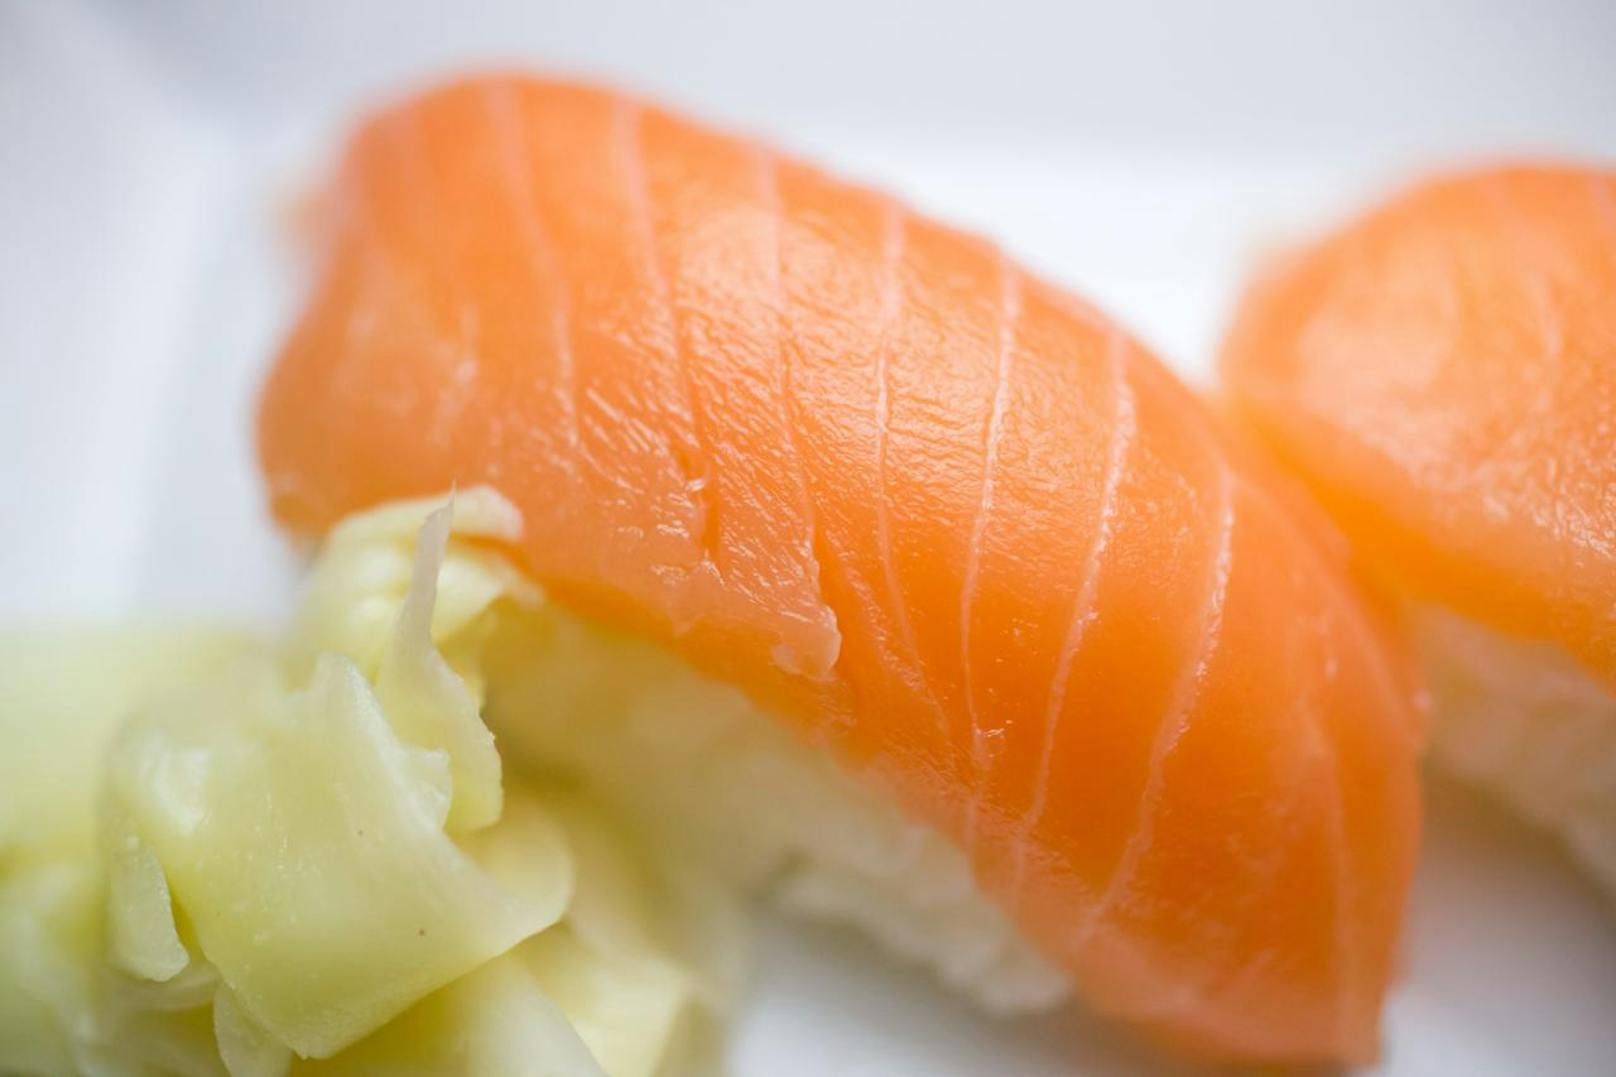 Über seine Liebe zu Sushi hatte sich der Mann offenbar infiziert. Er gab an, täglich rohen Lachs verspeist zu haben.